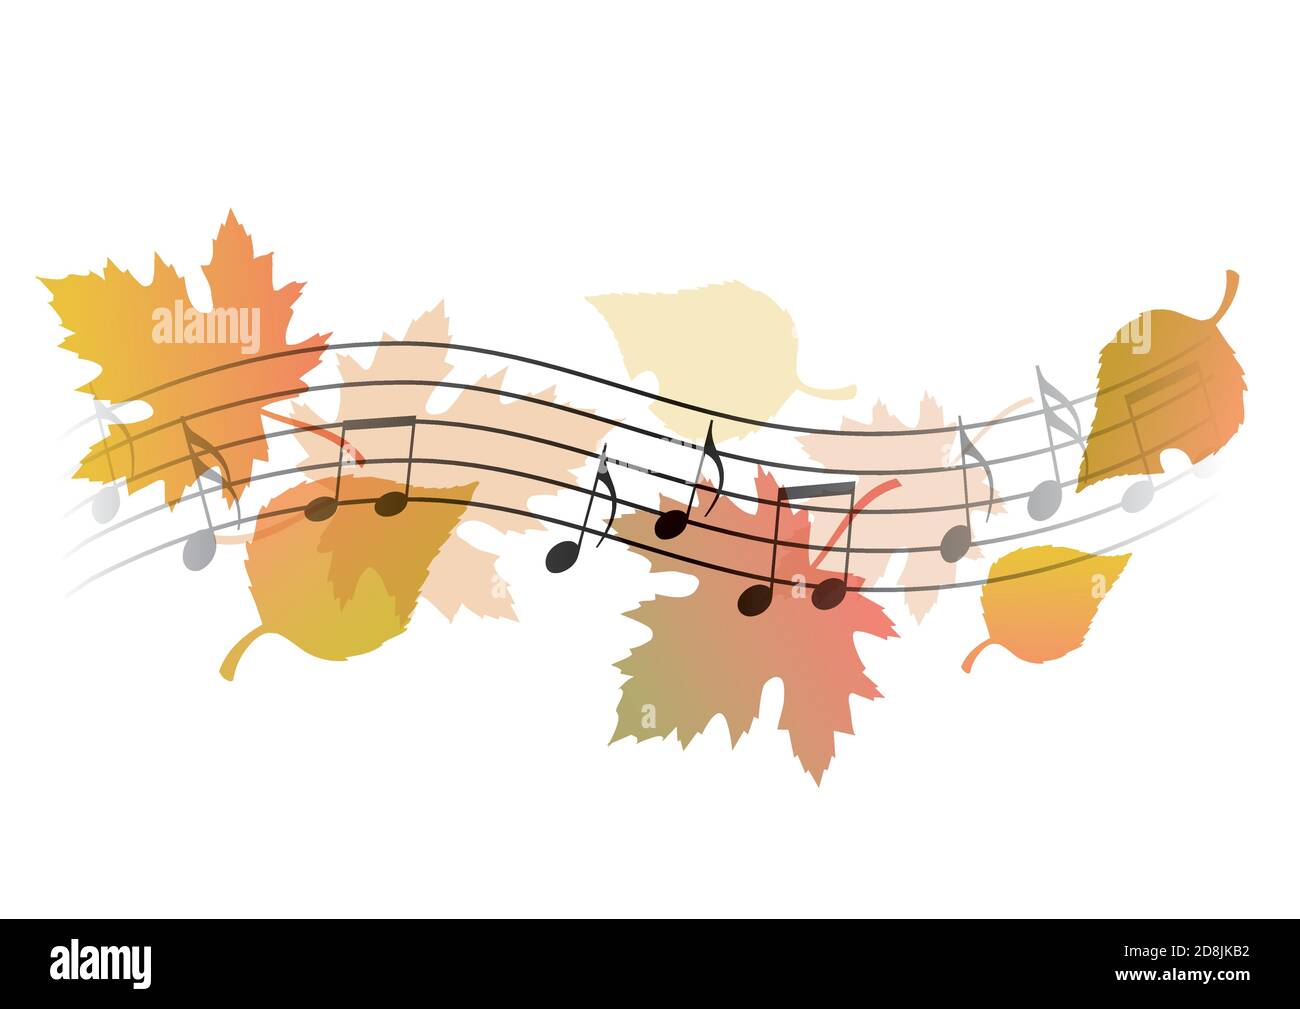 Mélodies d'automne, notes musicales Illustration de la notation musicale ondulée avec des feuilles d'automne symbolisant le chant d'automne. Vecteur disponible. Illustration de Vecteur